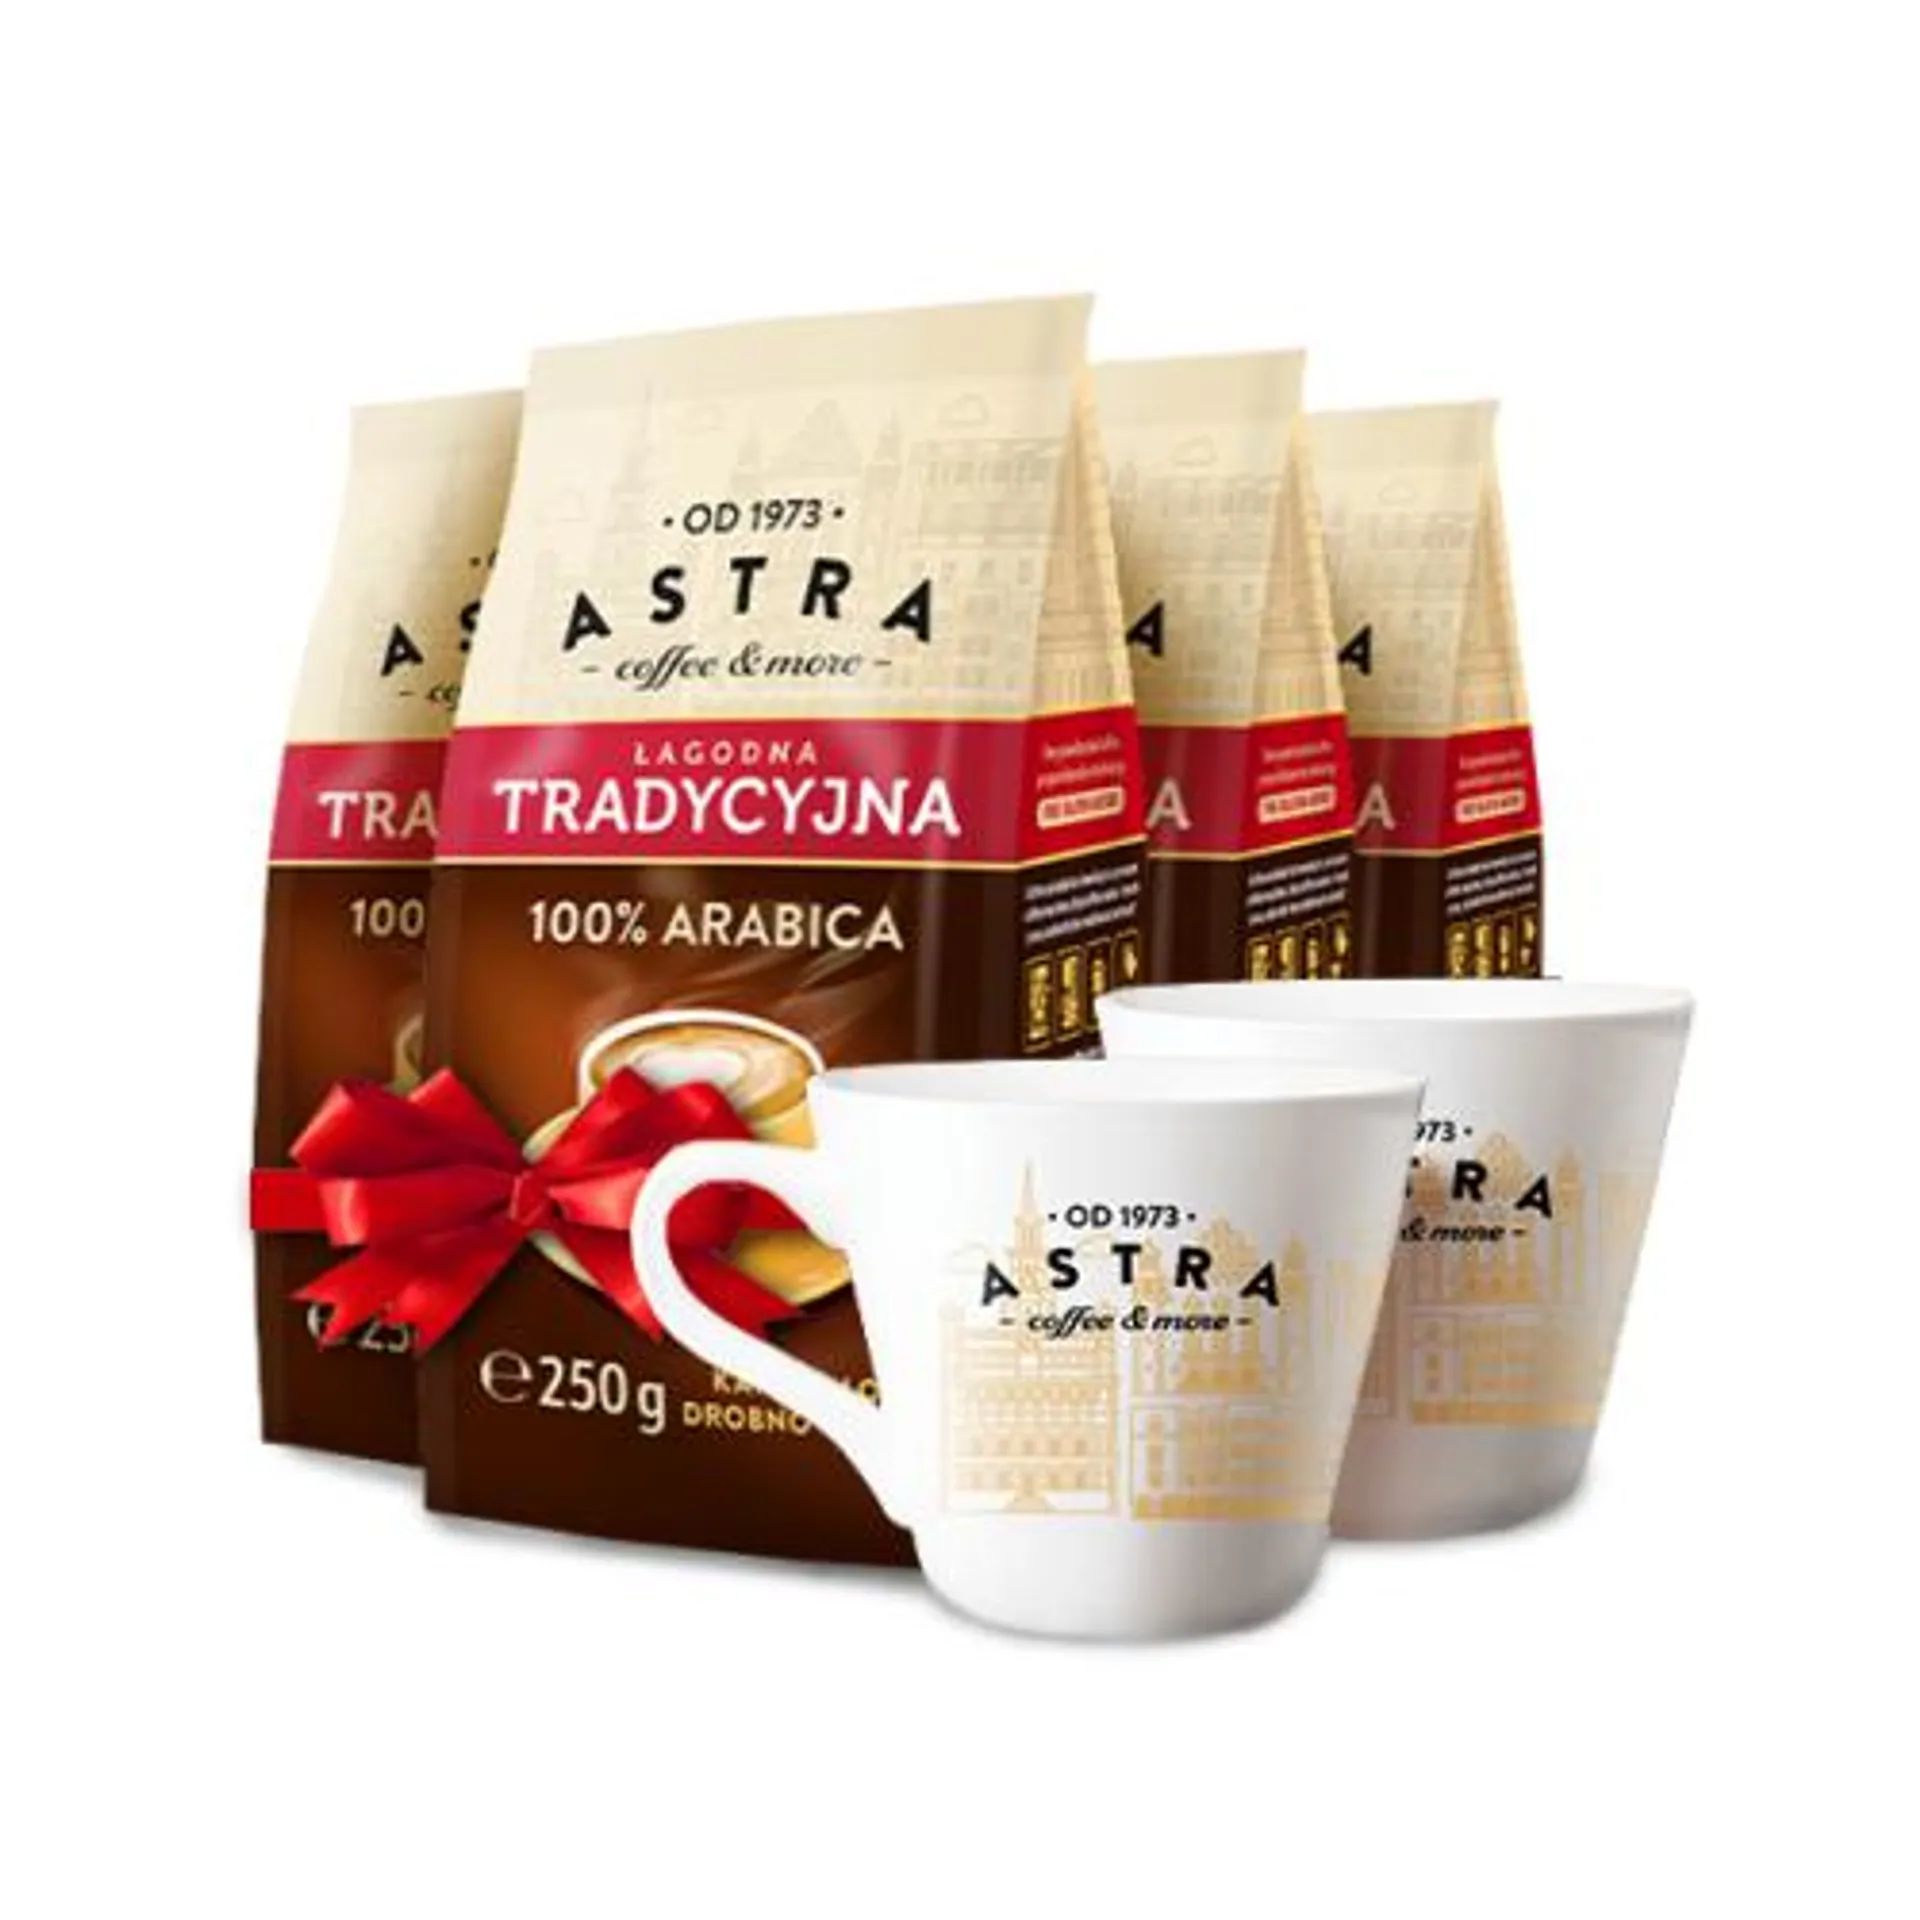 Astra Zestaw Kawa Tradycyjna drobno mielona 250g x 4 + 2 filiżanki